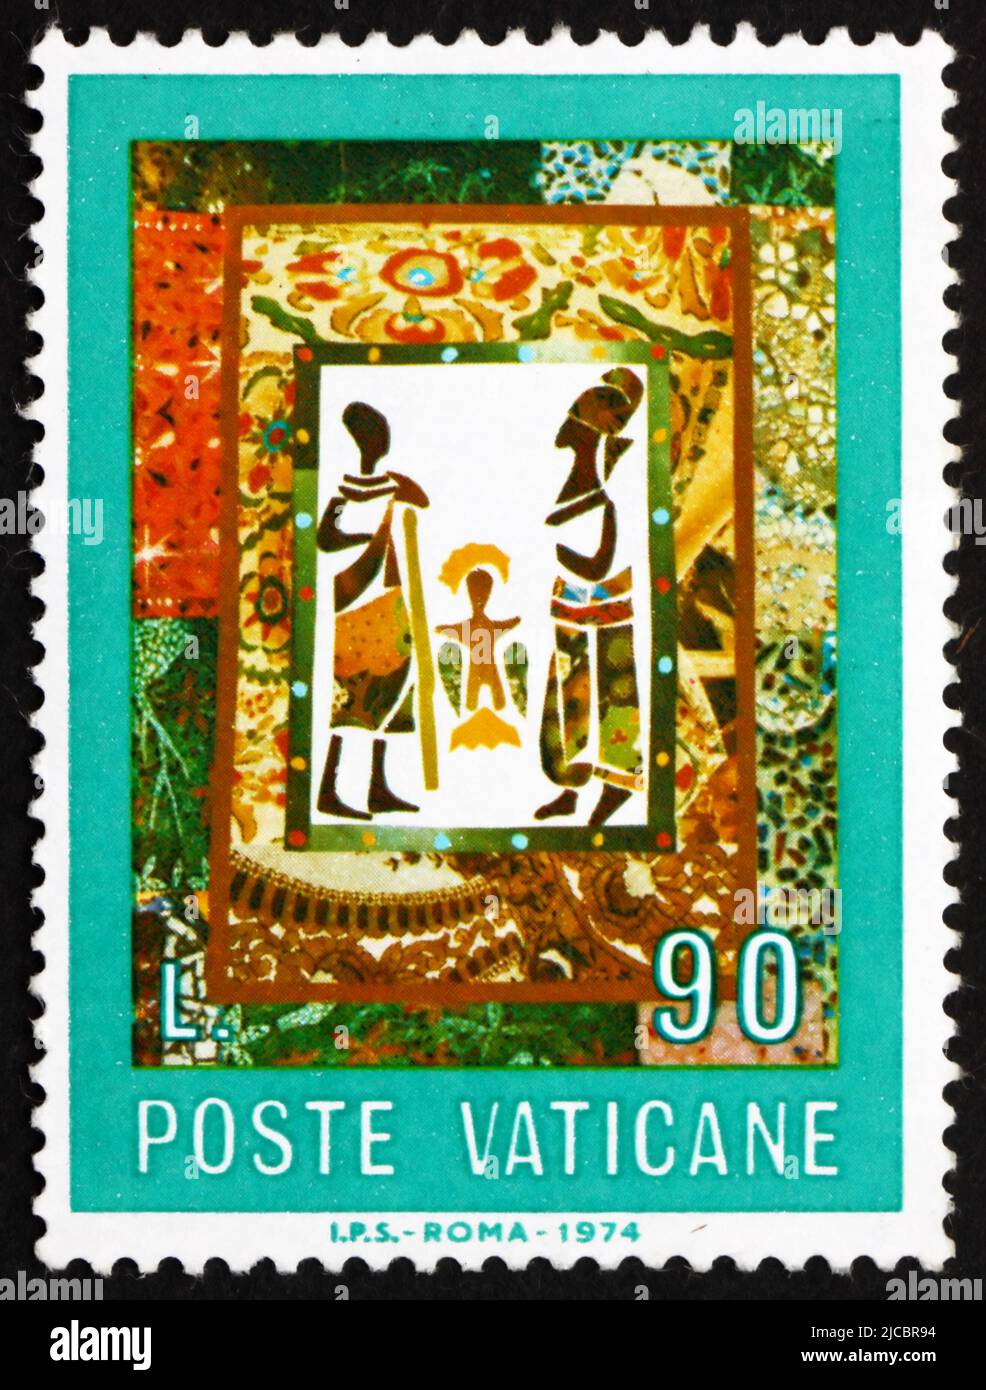 VATICANO - CIRCA 1974: Un sello impreso en el Vaticano muestra la Natividad, africana, circa 1974 Foto de stock